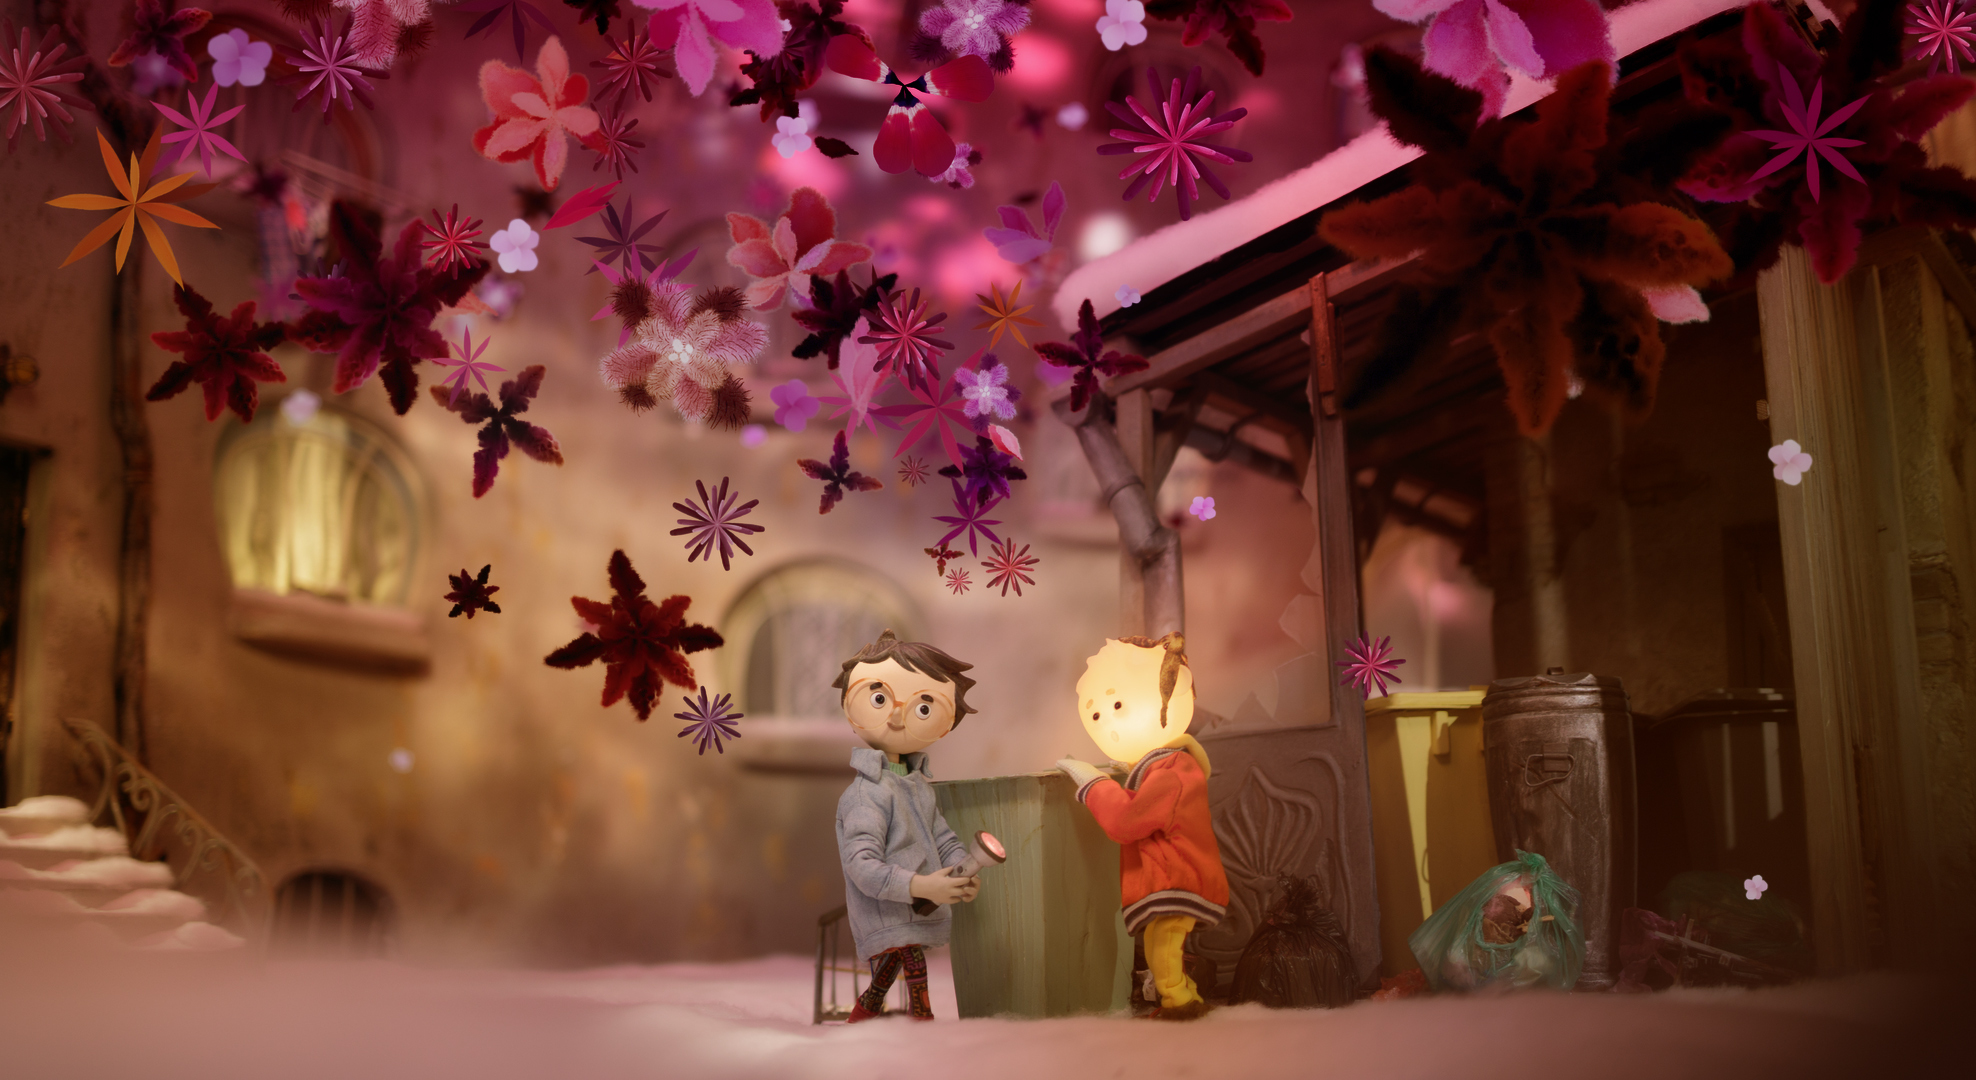 Fotograma de la película de animación stop-motion 'Tony, Shelly y la linterna mágica', del húngaro Filip Posivac